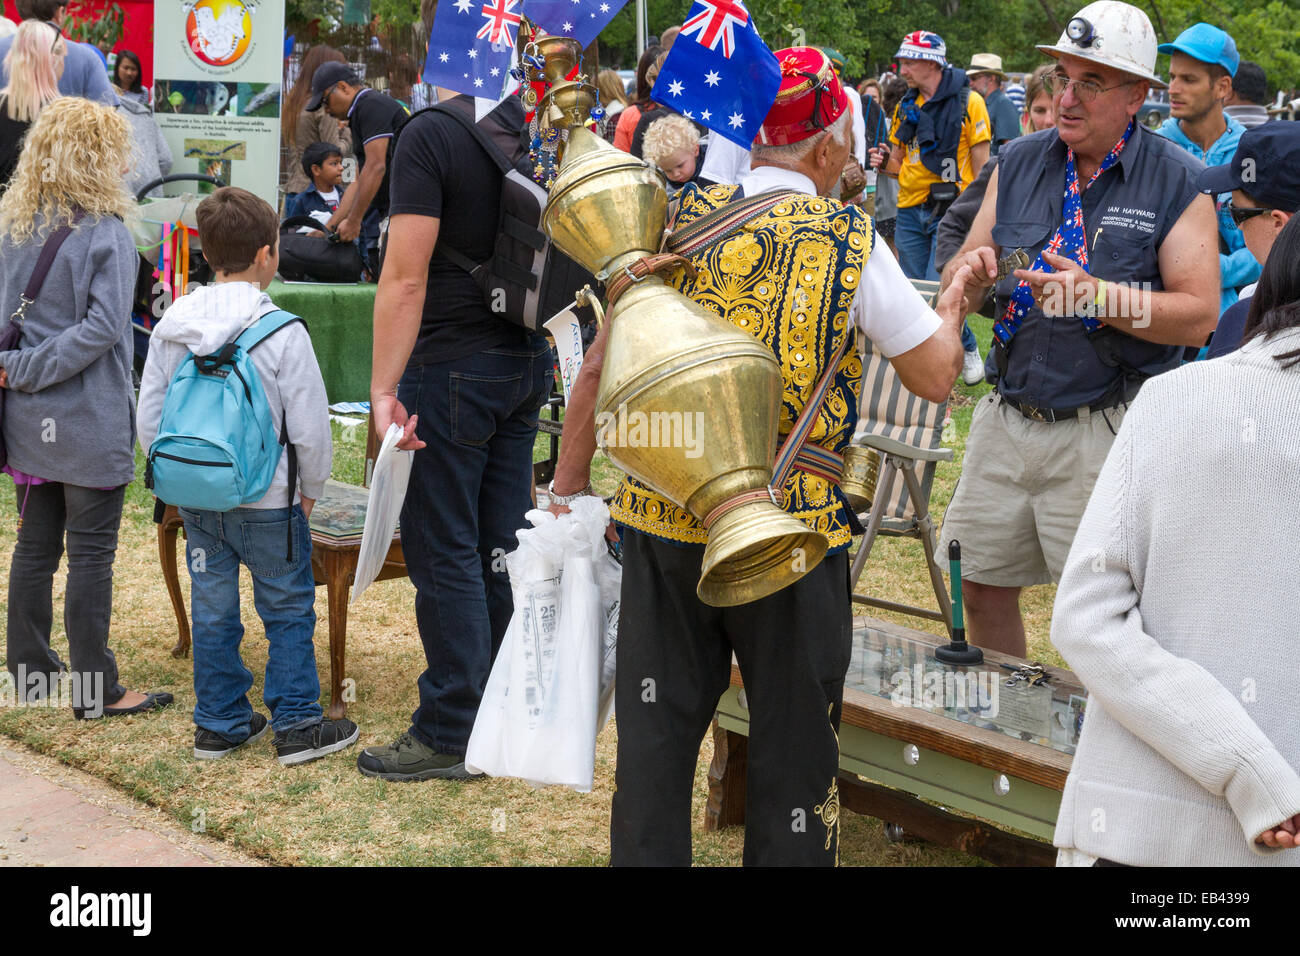 Bunt gekleidete Mann am Australia Day feiern Stockfoto